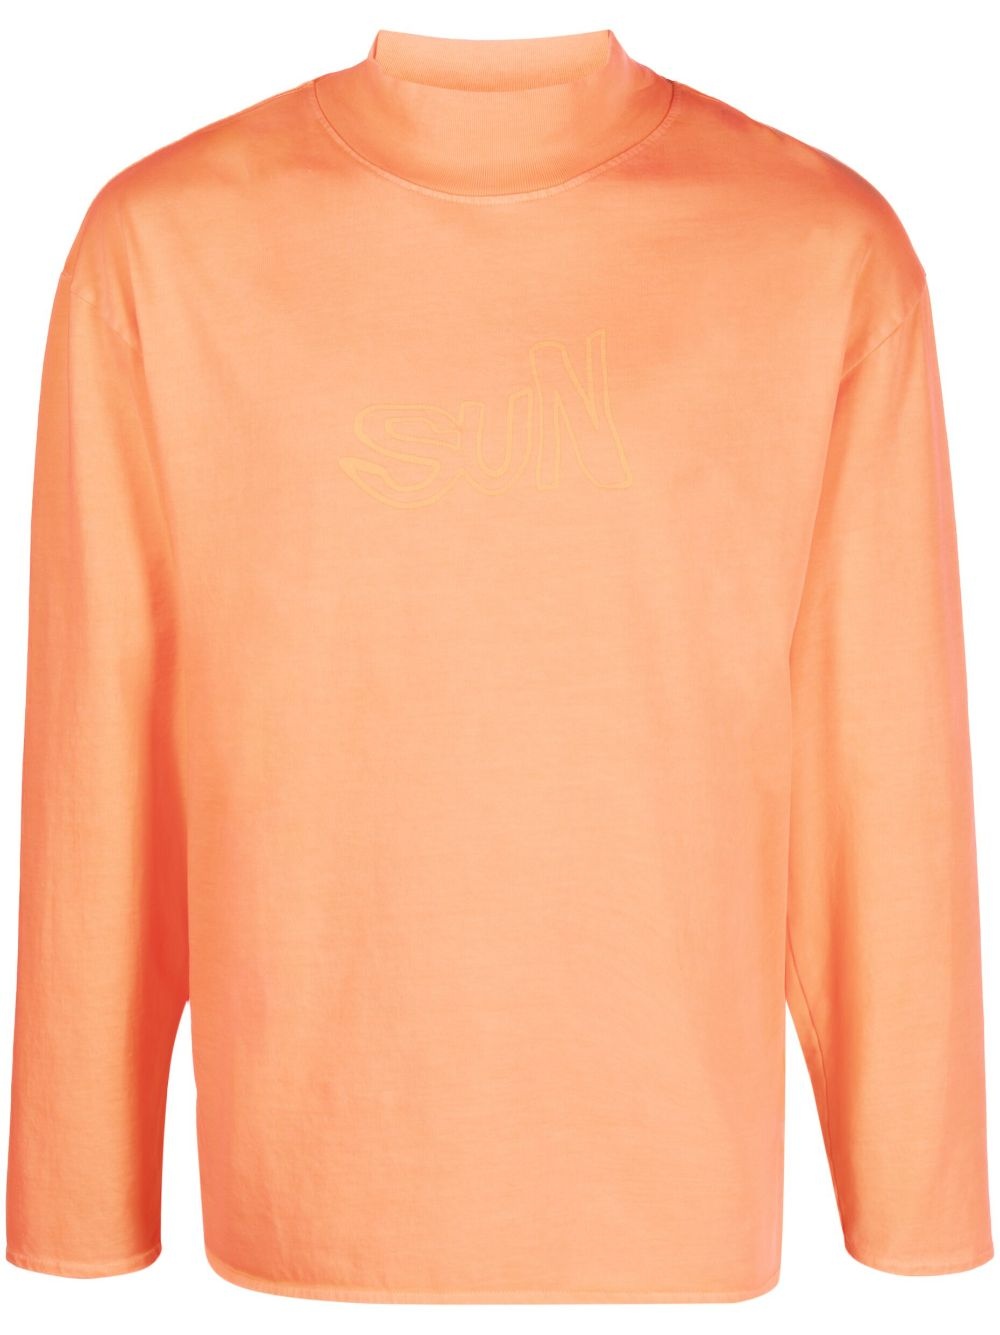 high-neck cotton sweatshirt - 1